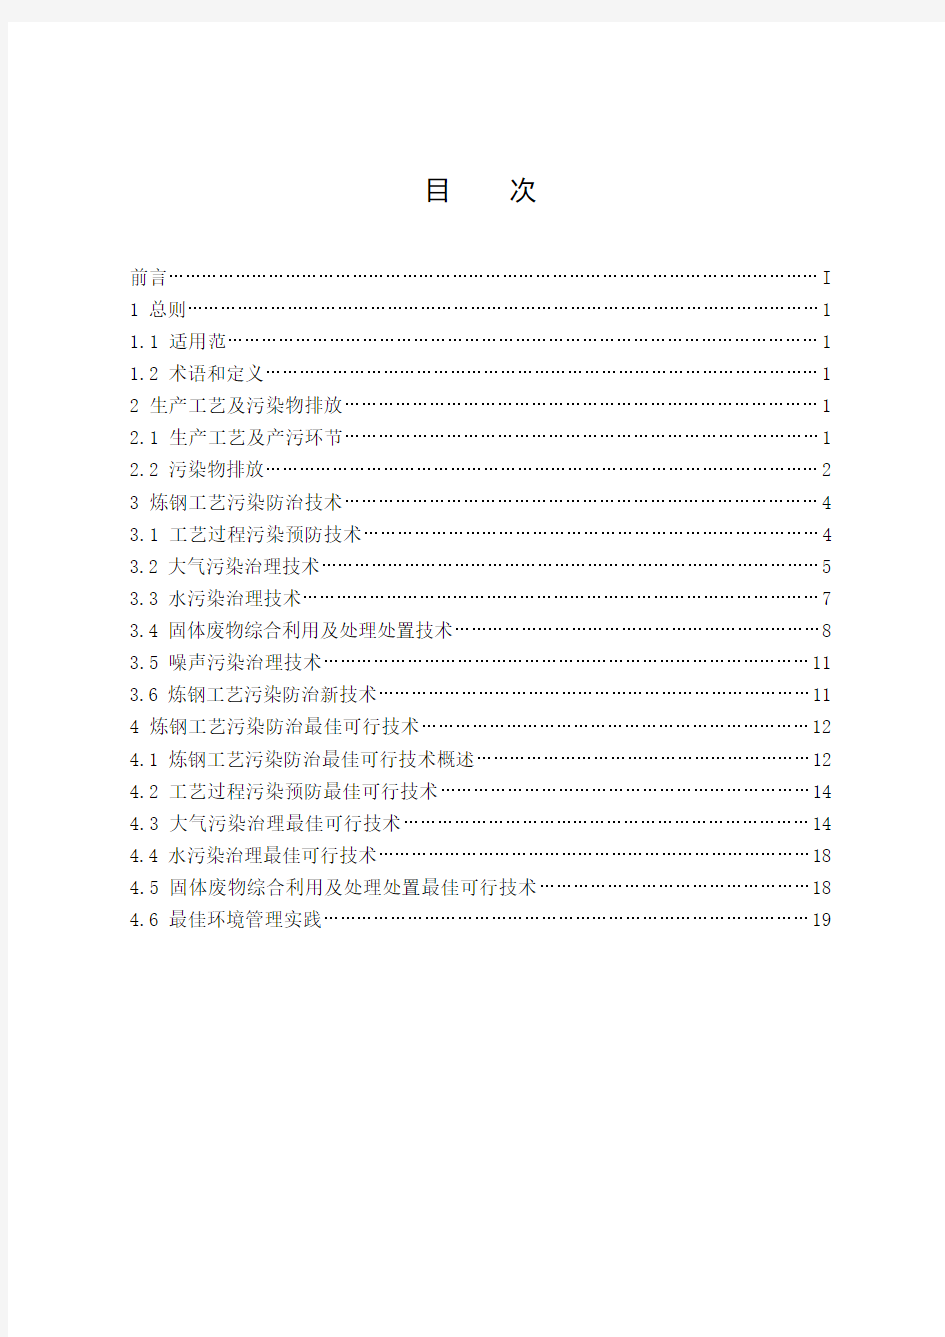 中华人民共和国环境保护部公告 2010年第93号 附件二：环境保护技术文件